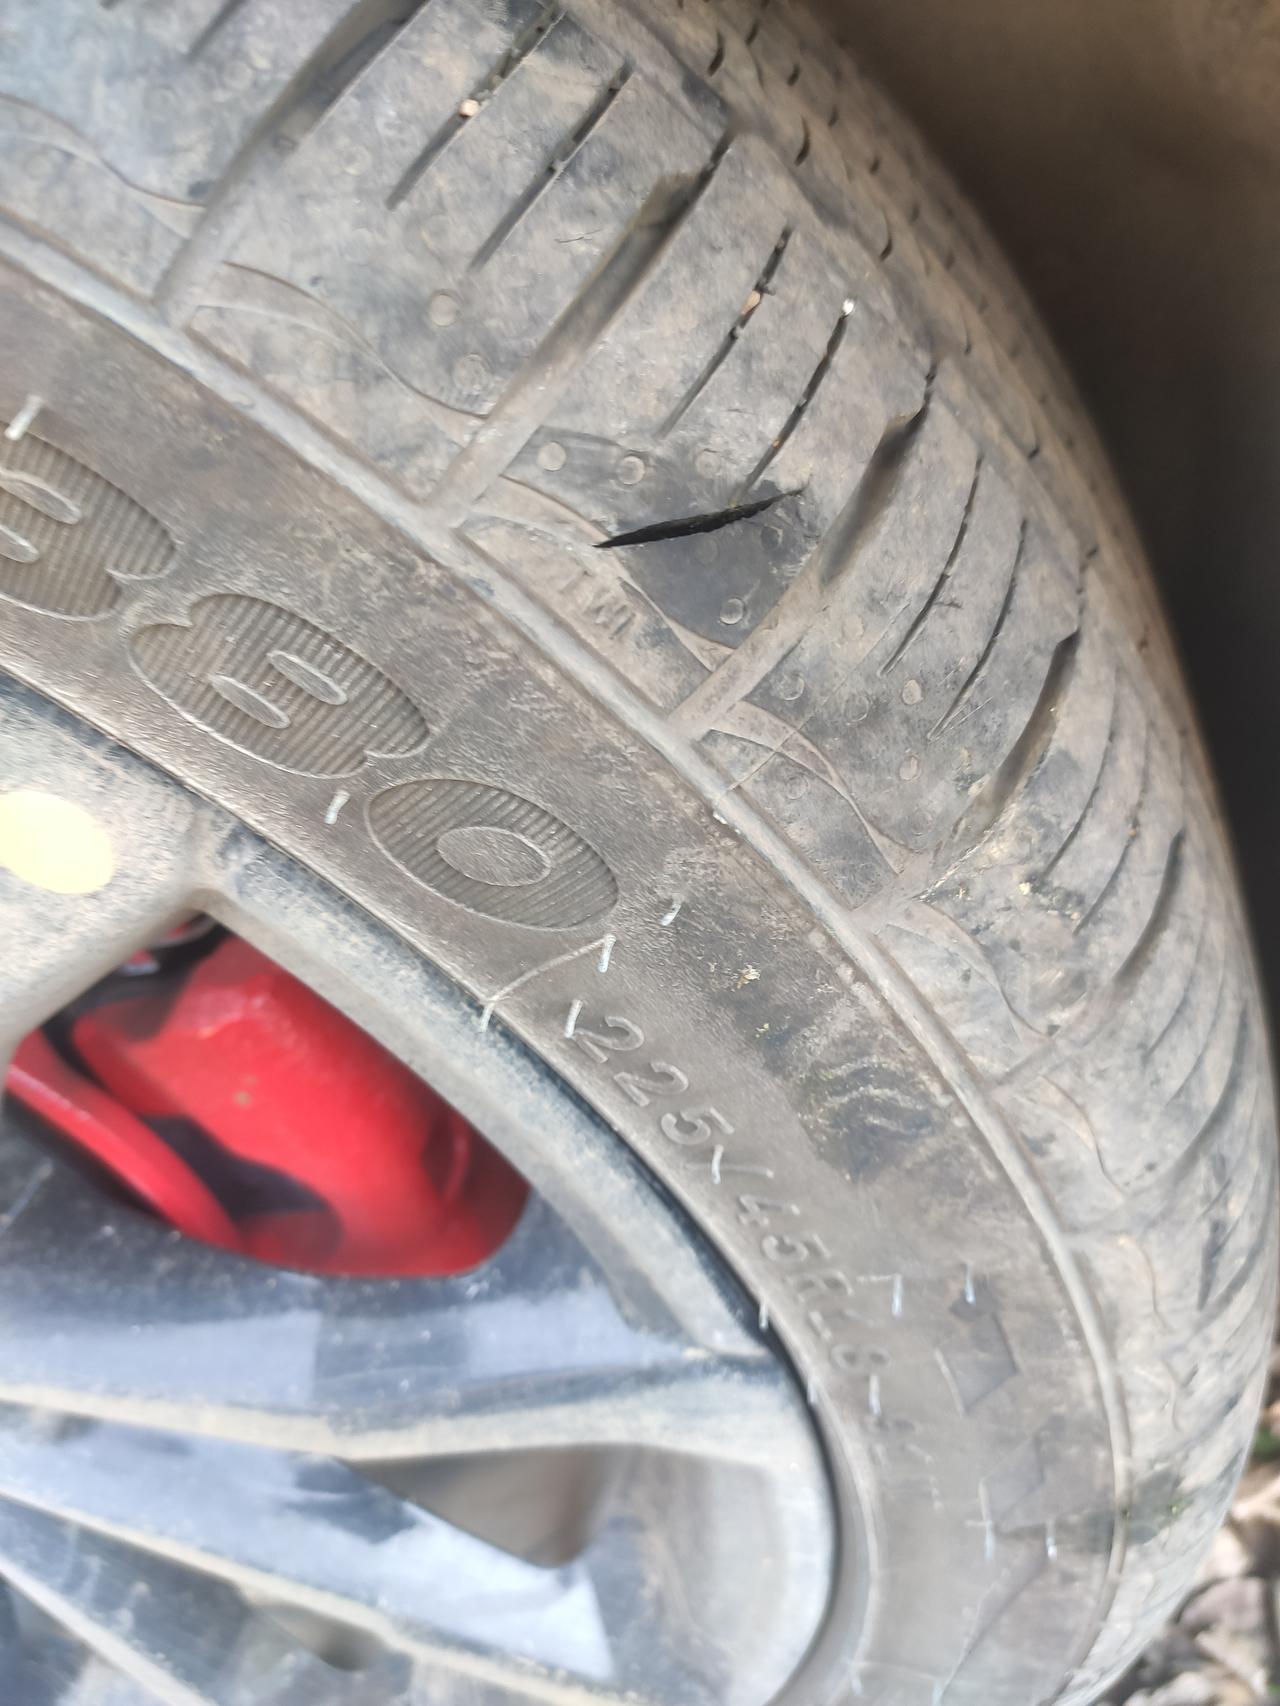 吉利帝豪S ，看到轮胎破了个口，不知道是被啥扎的，深度超过一厘米，但是没漏气。使用还没到2000公里，换胎的